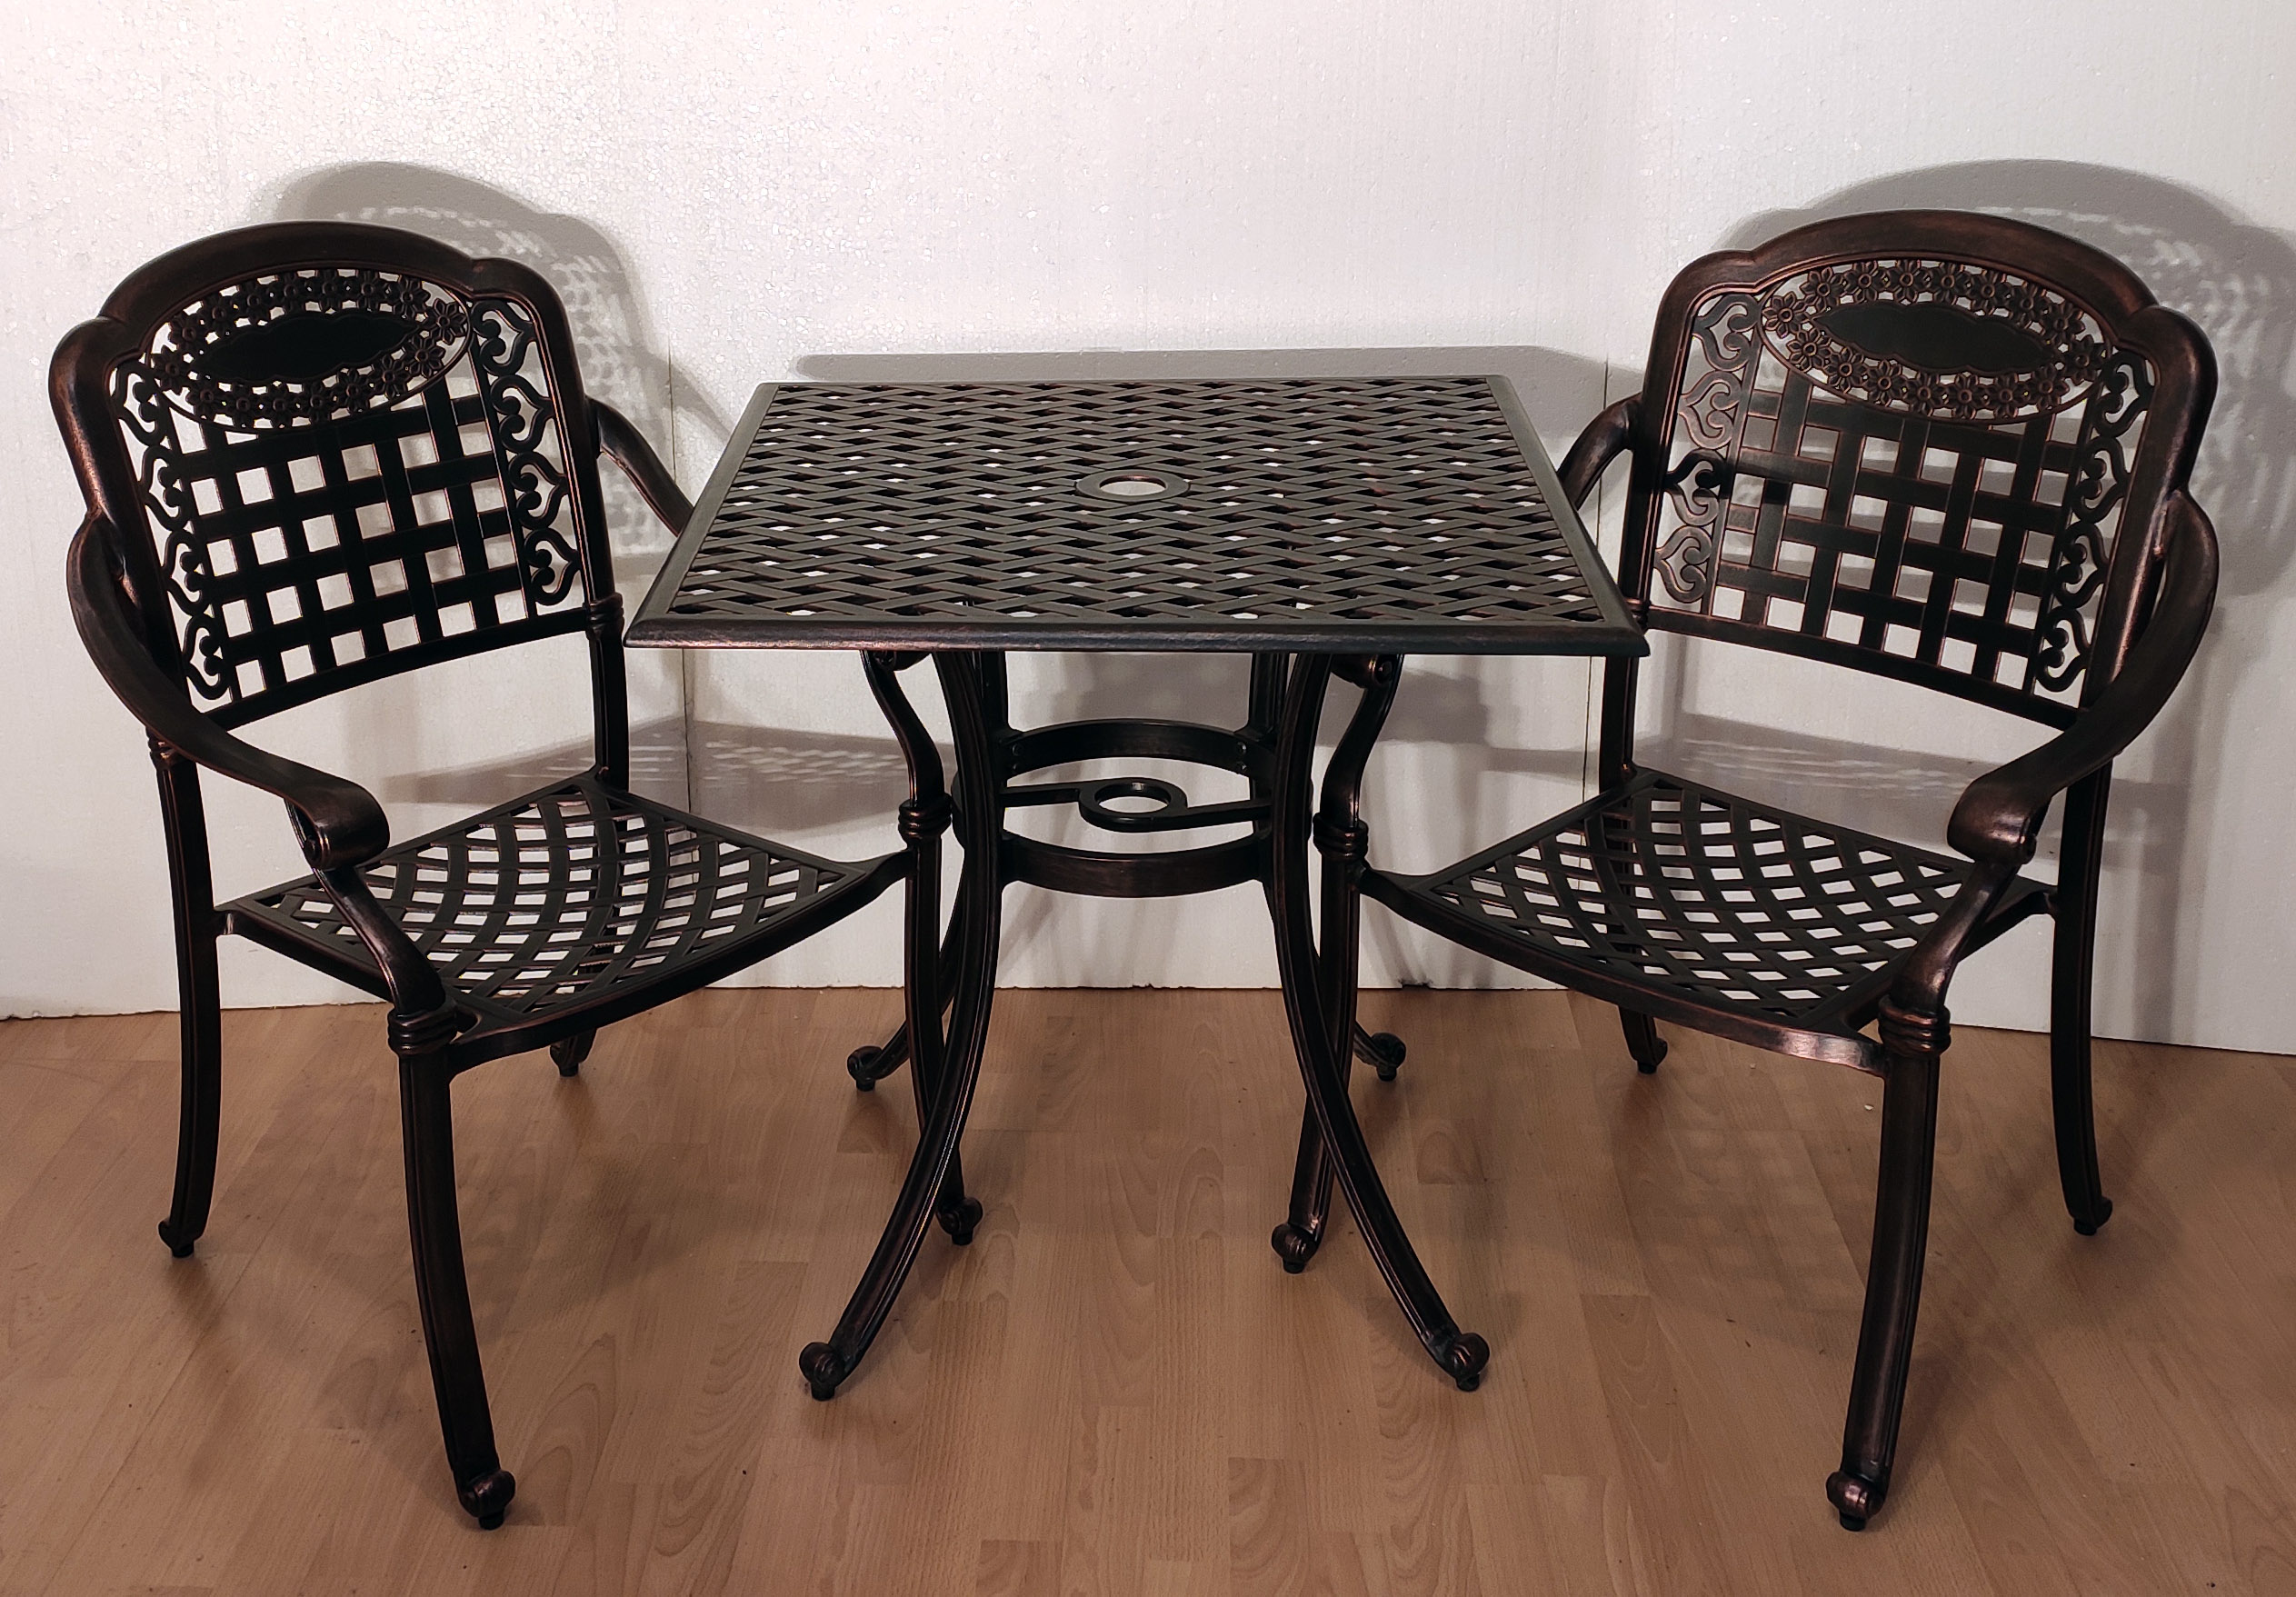 Мебель из металла для дачи и сада, металлические стулья для кафе, садовая мебель из металла, мебель из литого алюминия, чугунная мебель